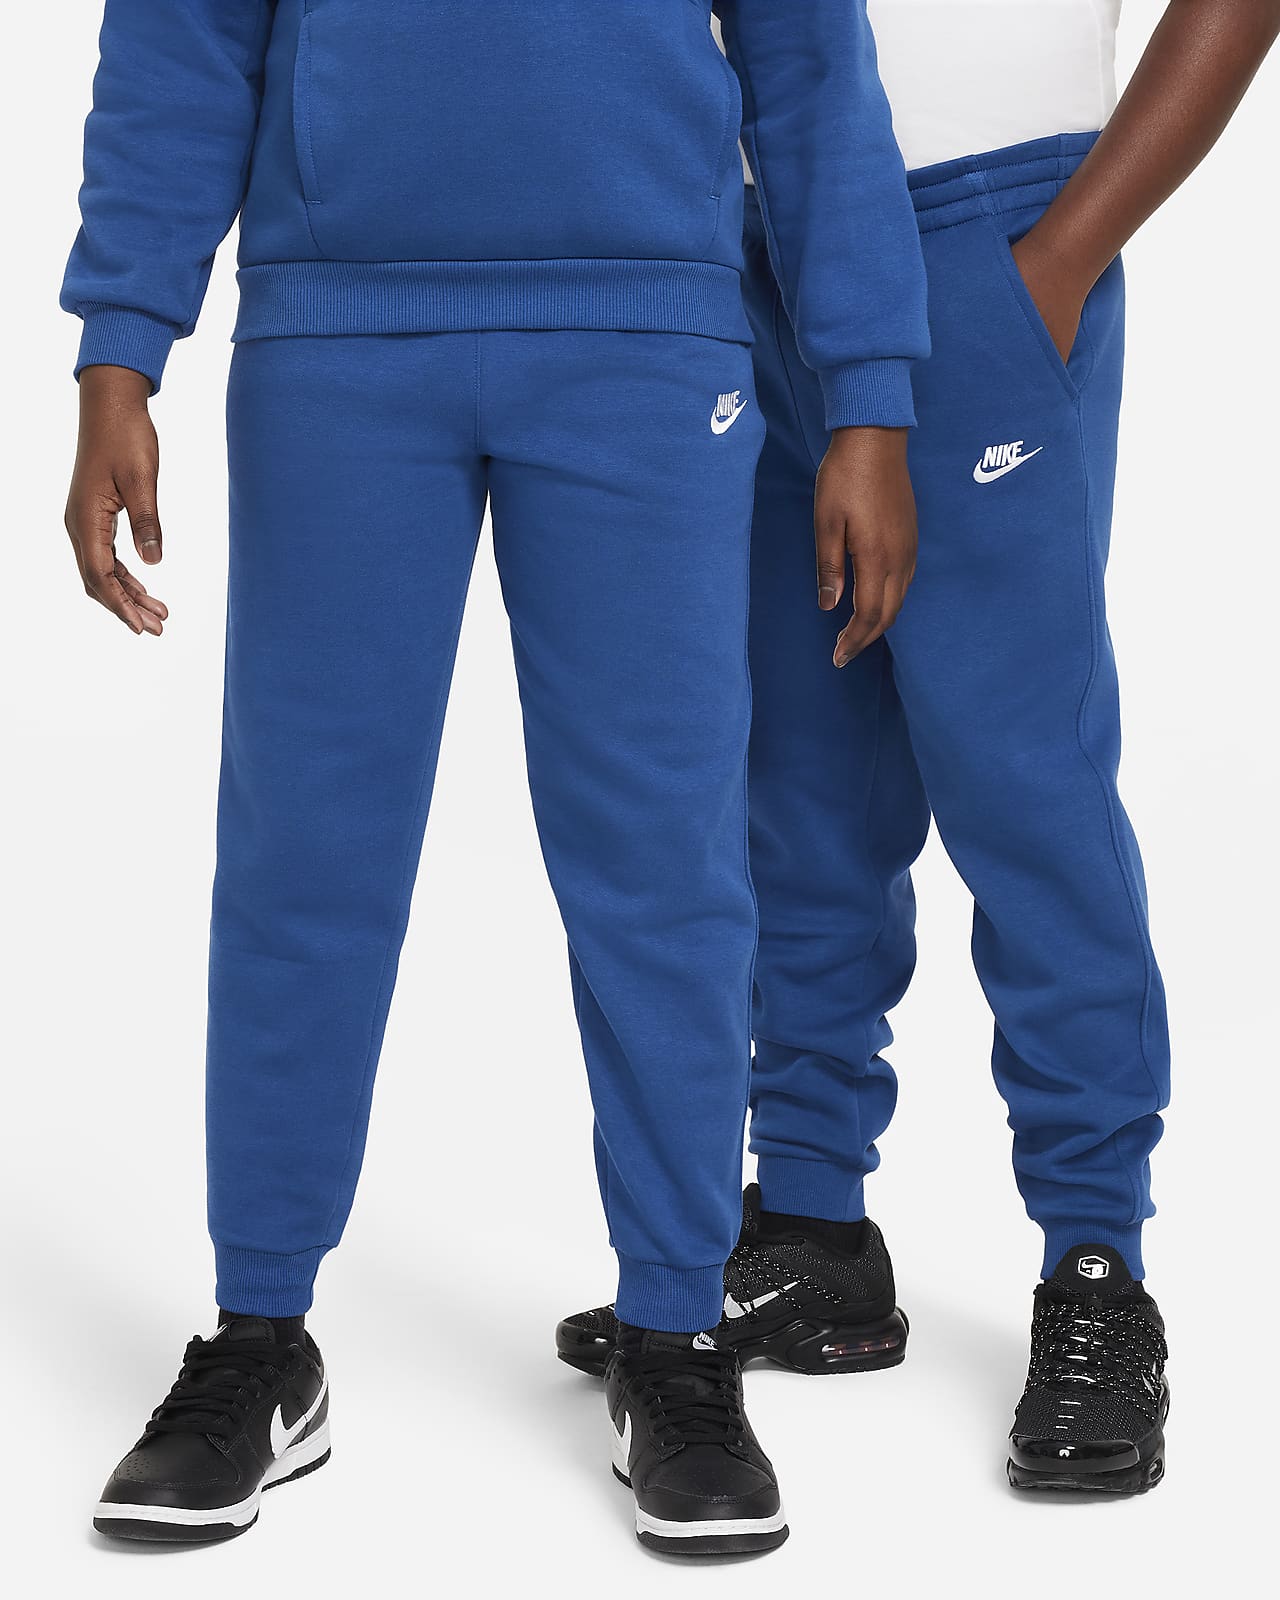 Nike Sportswear Club Fleece Older Kids' (Boys') Joggers (Extended Size)